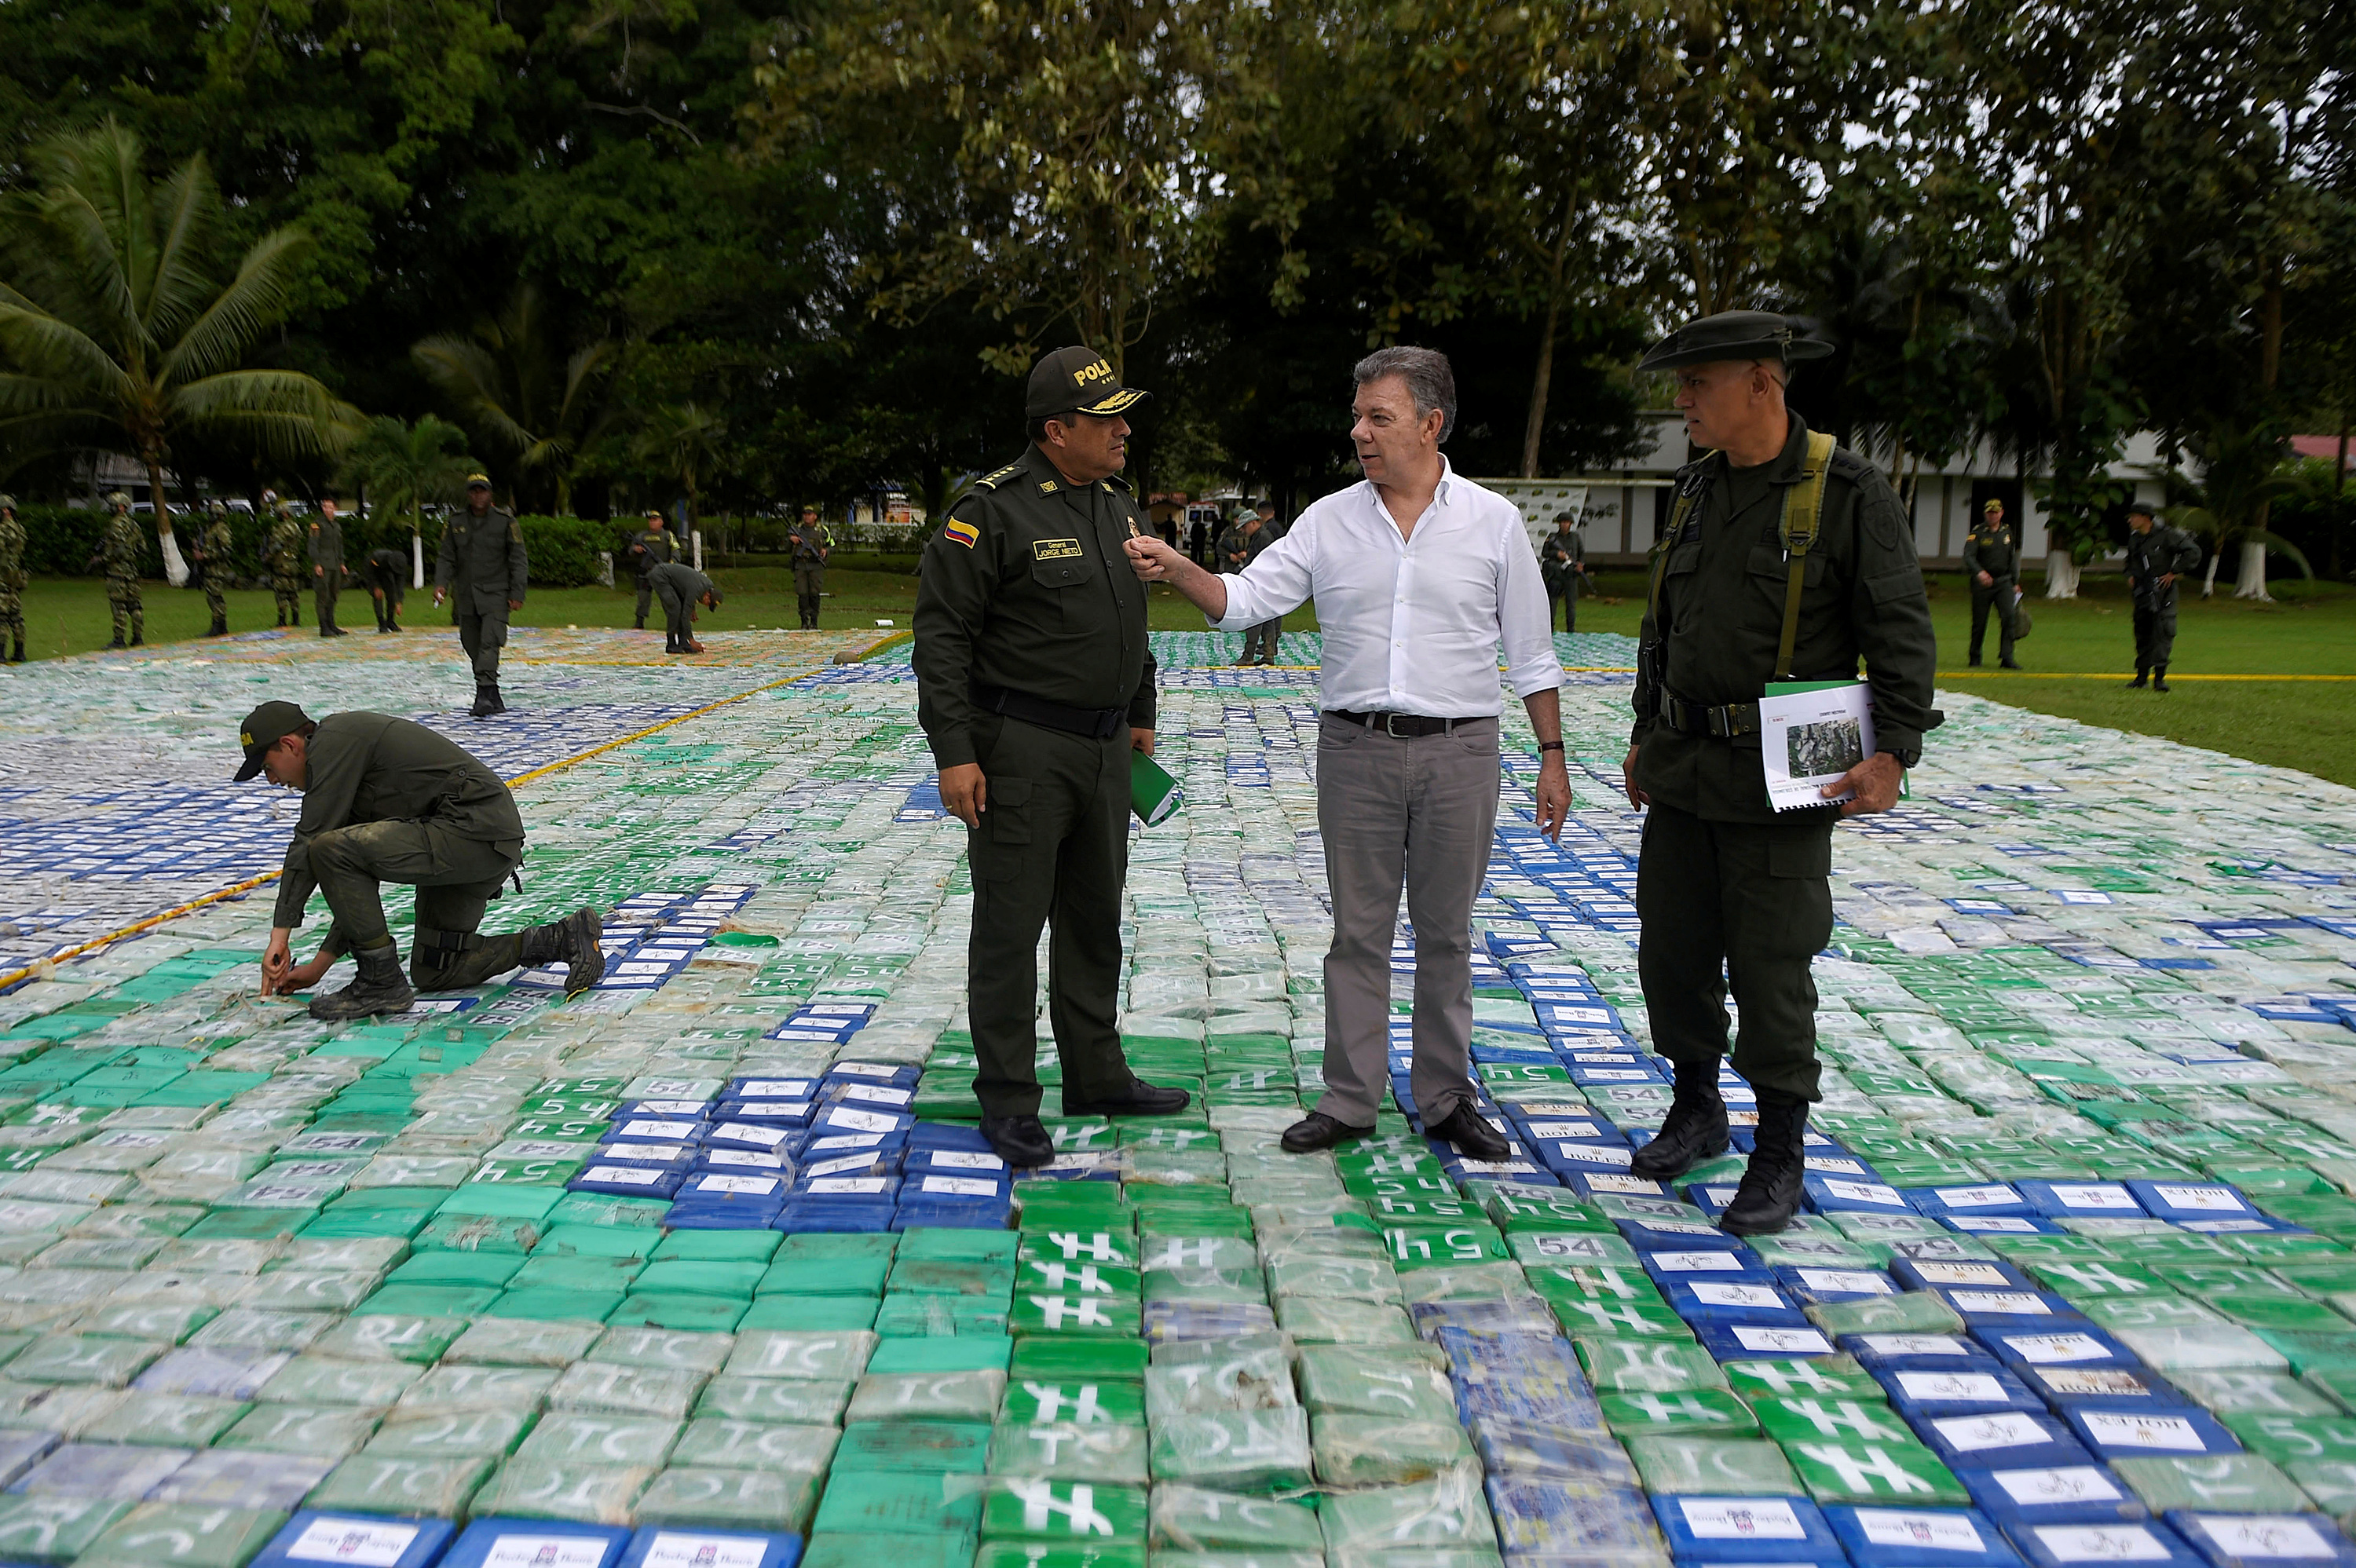 ضبط 12 طنا من الكوكايين تحت الأرض فى كولومبيا